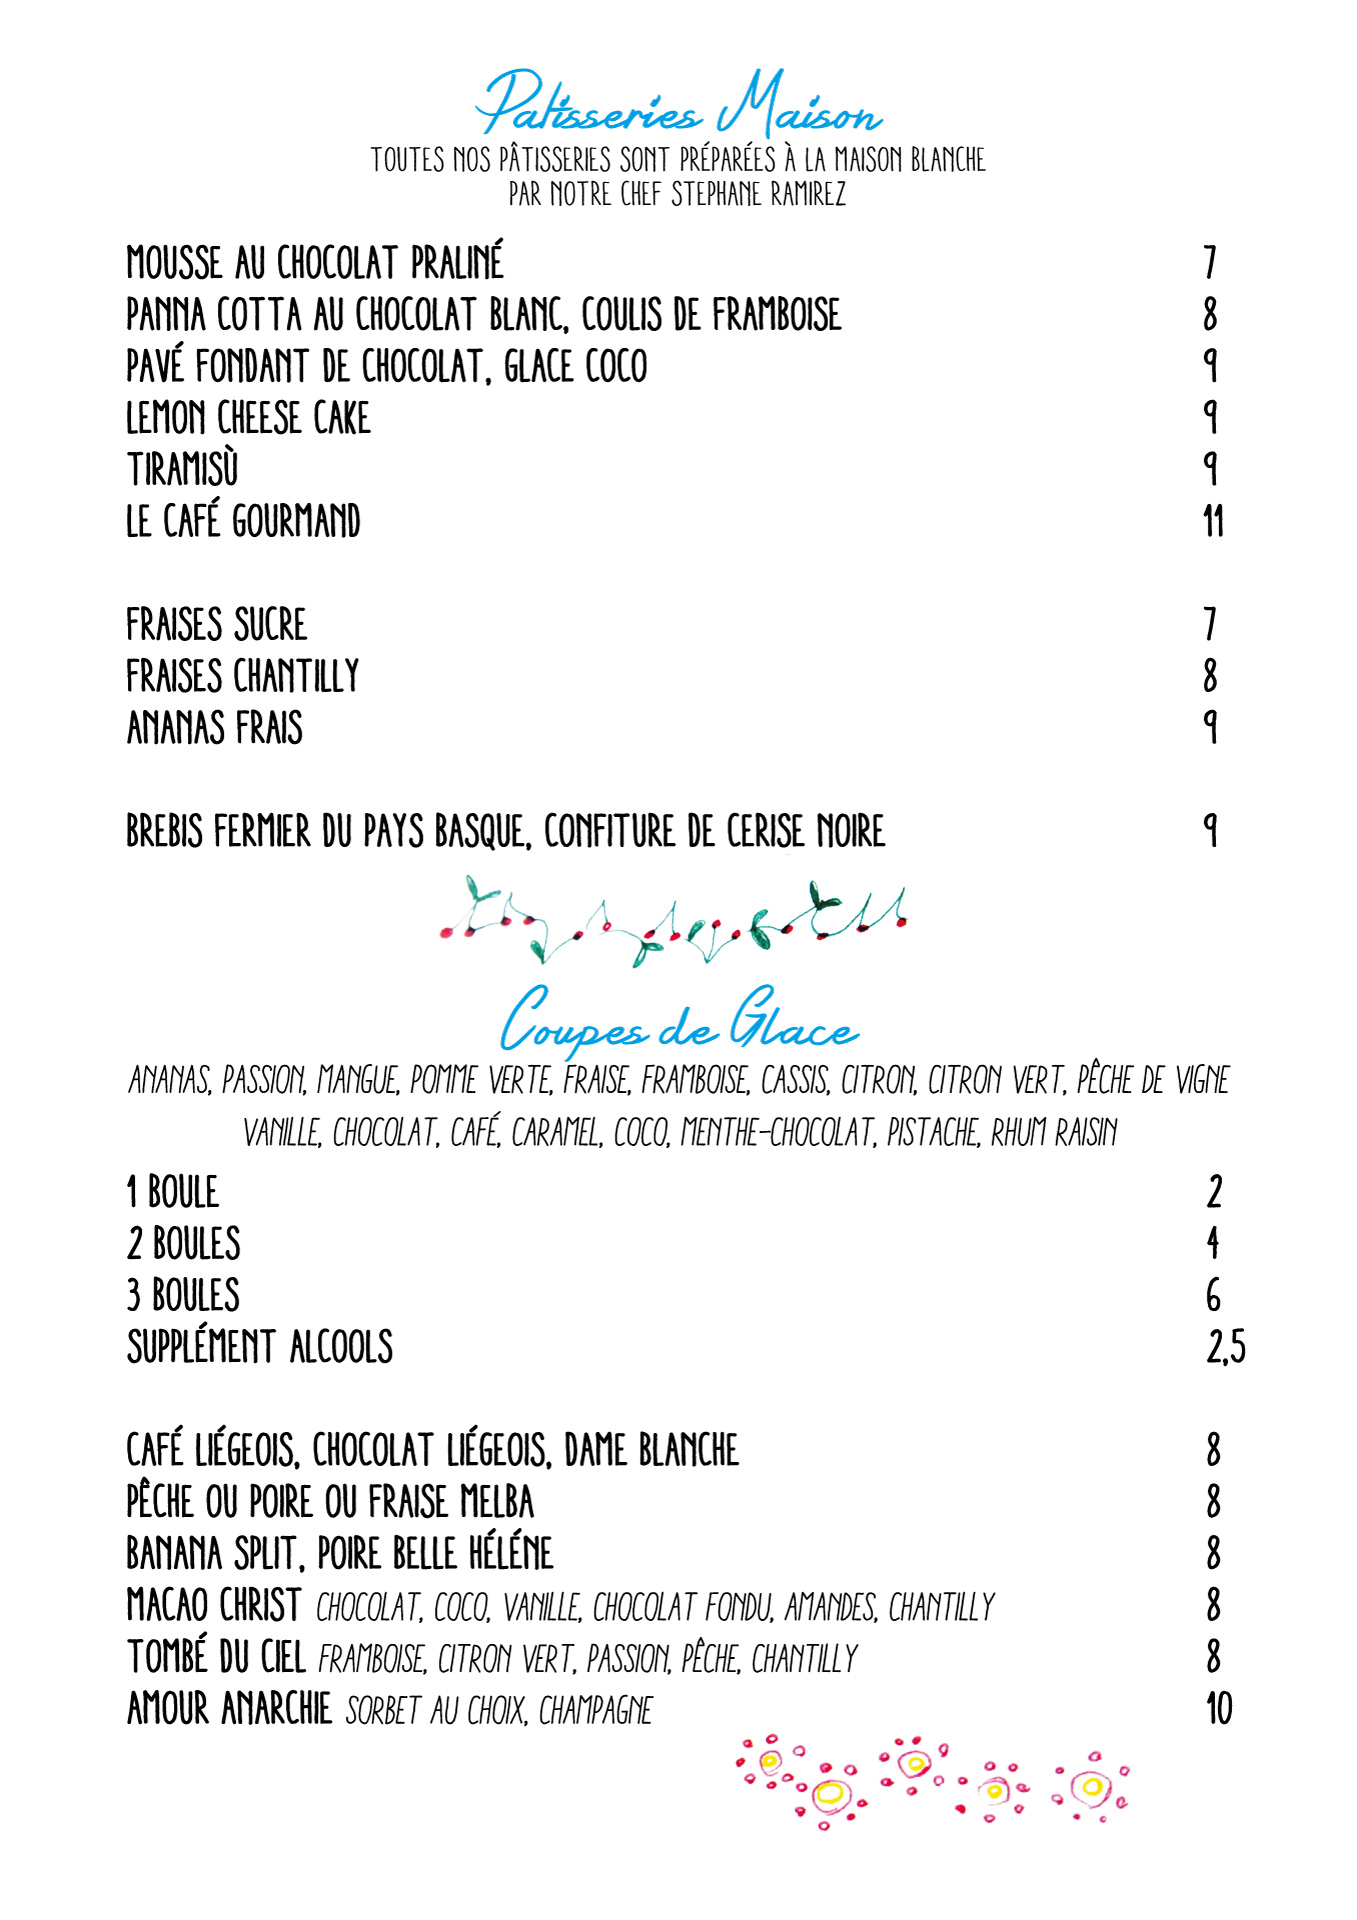 Carte restaurant 2021 - Desserts, Glaces - Maison Blanche